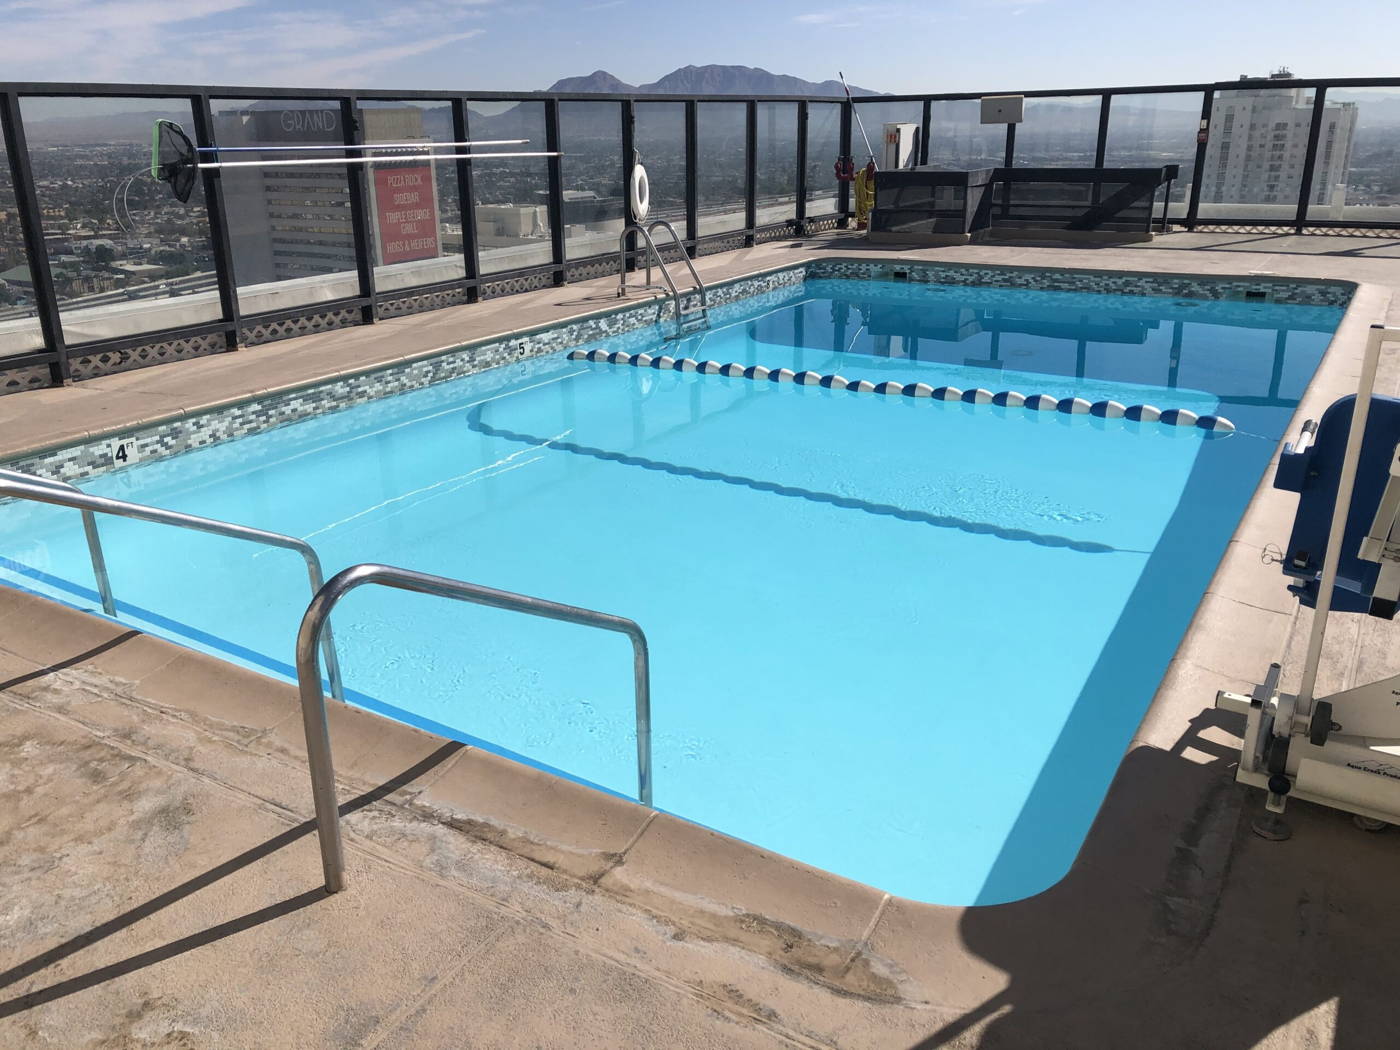 Binions Pool Deck Las Vegas